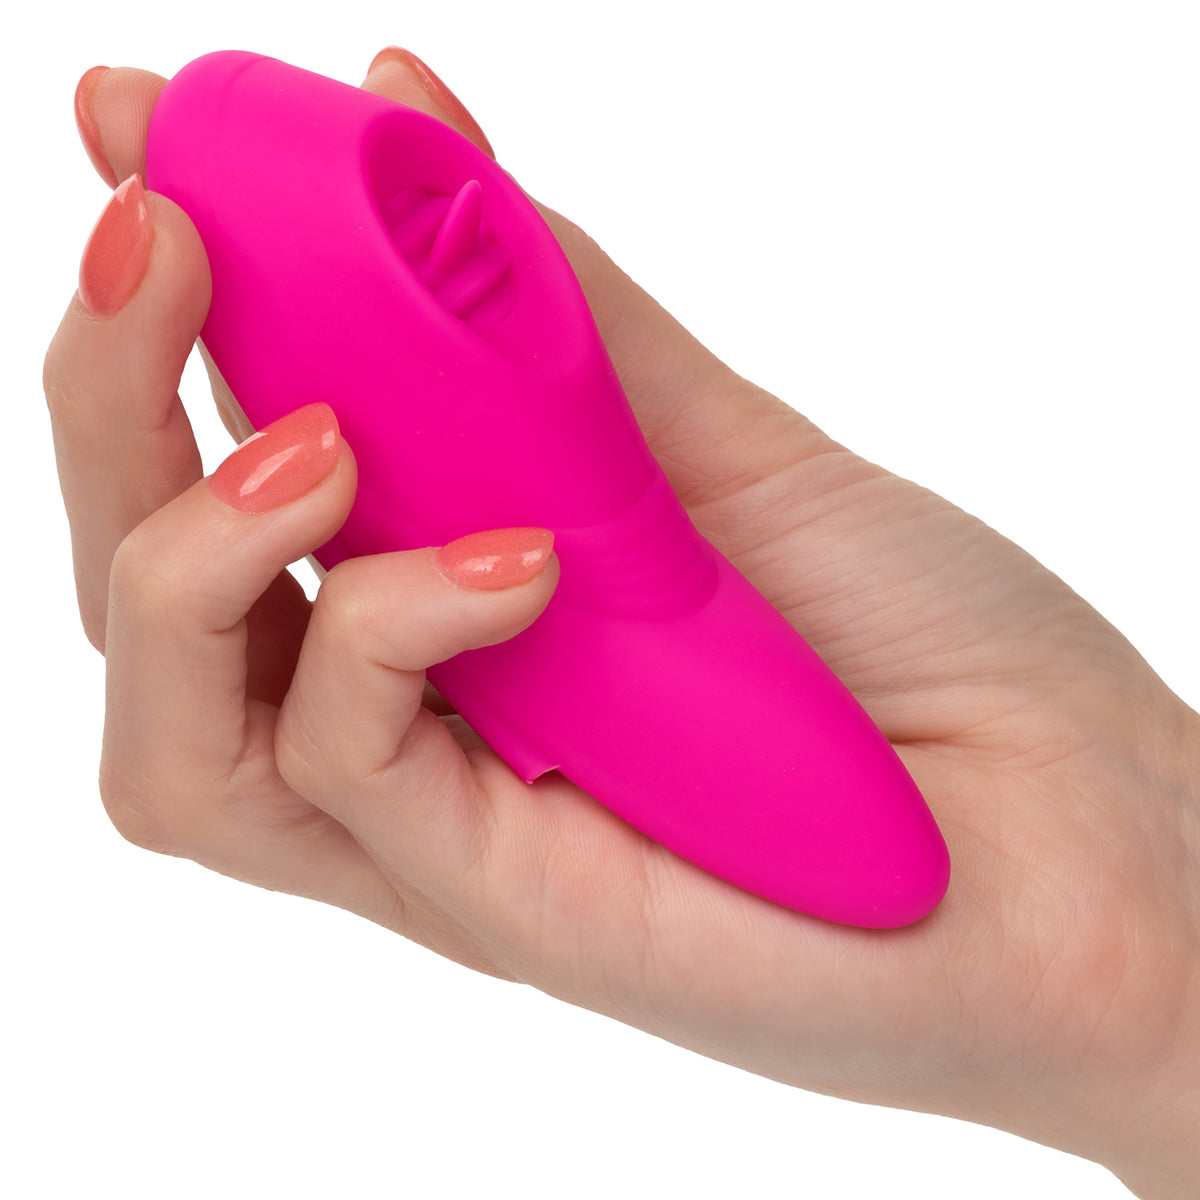 Calexotics - Lock-N-Play Remote Flicker Panty Teaser – Pink